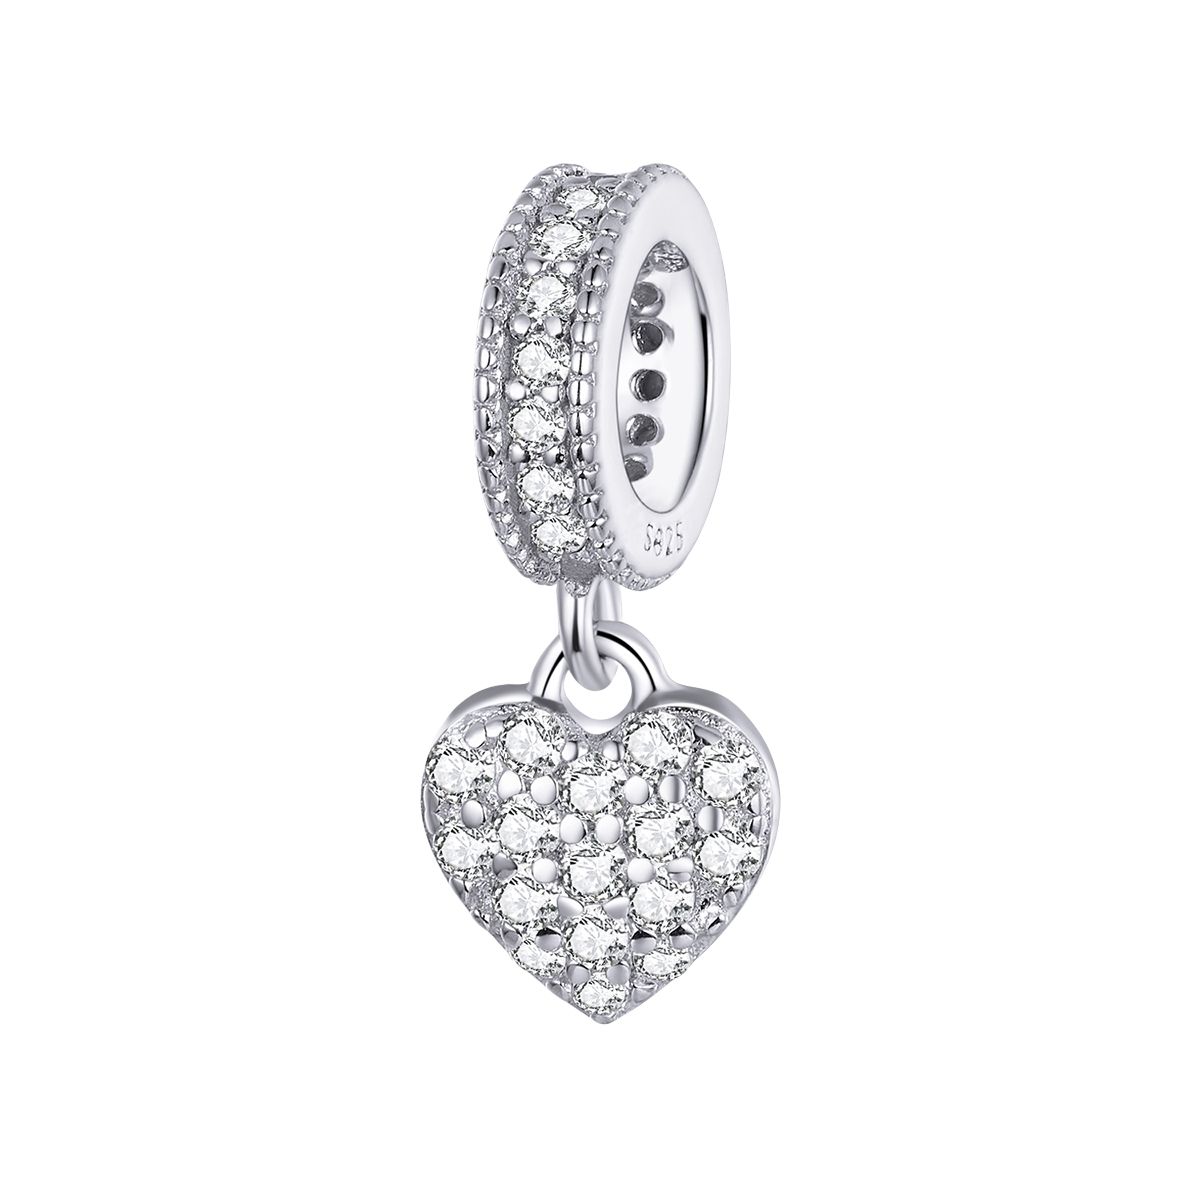 Hartvormige dangle bedel zirkonia  bead  Zilverana  geschikt voor Biagi , Pandora , Trollbeads armband  925 zilver